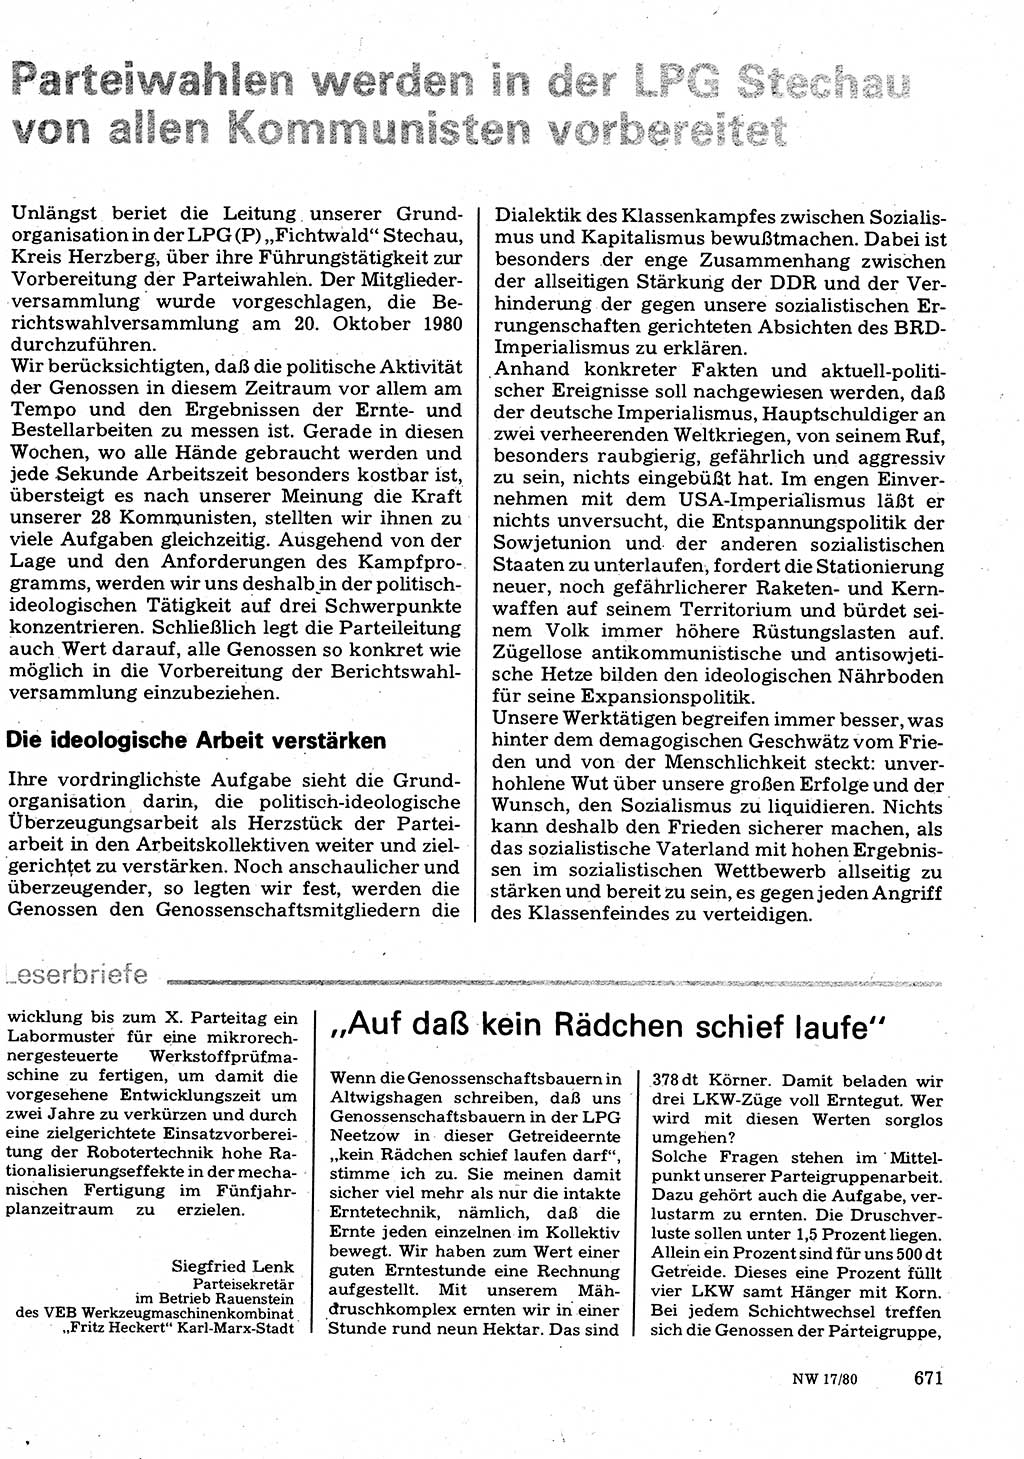 Neuer Weg (NW), Organ des Zentralkomitees (ZK) der SED (Sozialistische Einheitspartei Deutschlands) fÃ¼r Fragen des Parteilebens, 35. Jahrgang [Deutsche Demokratische Republik (DDR)] 1980, Seite 671 (NW ZK SED DDR 1980, S. 671)